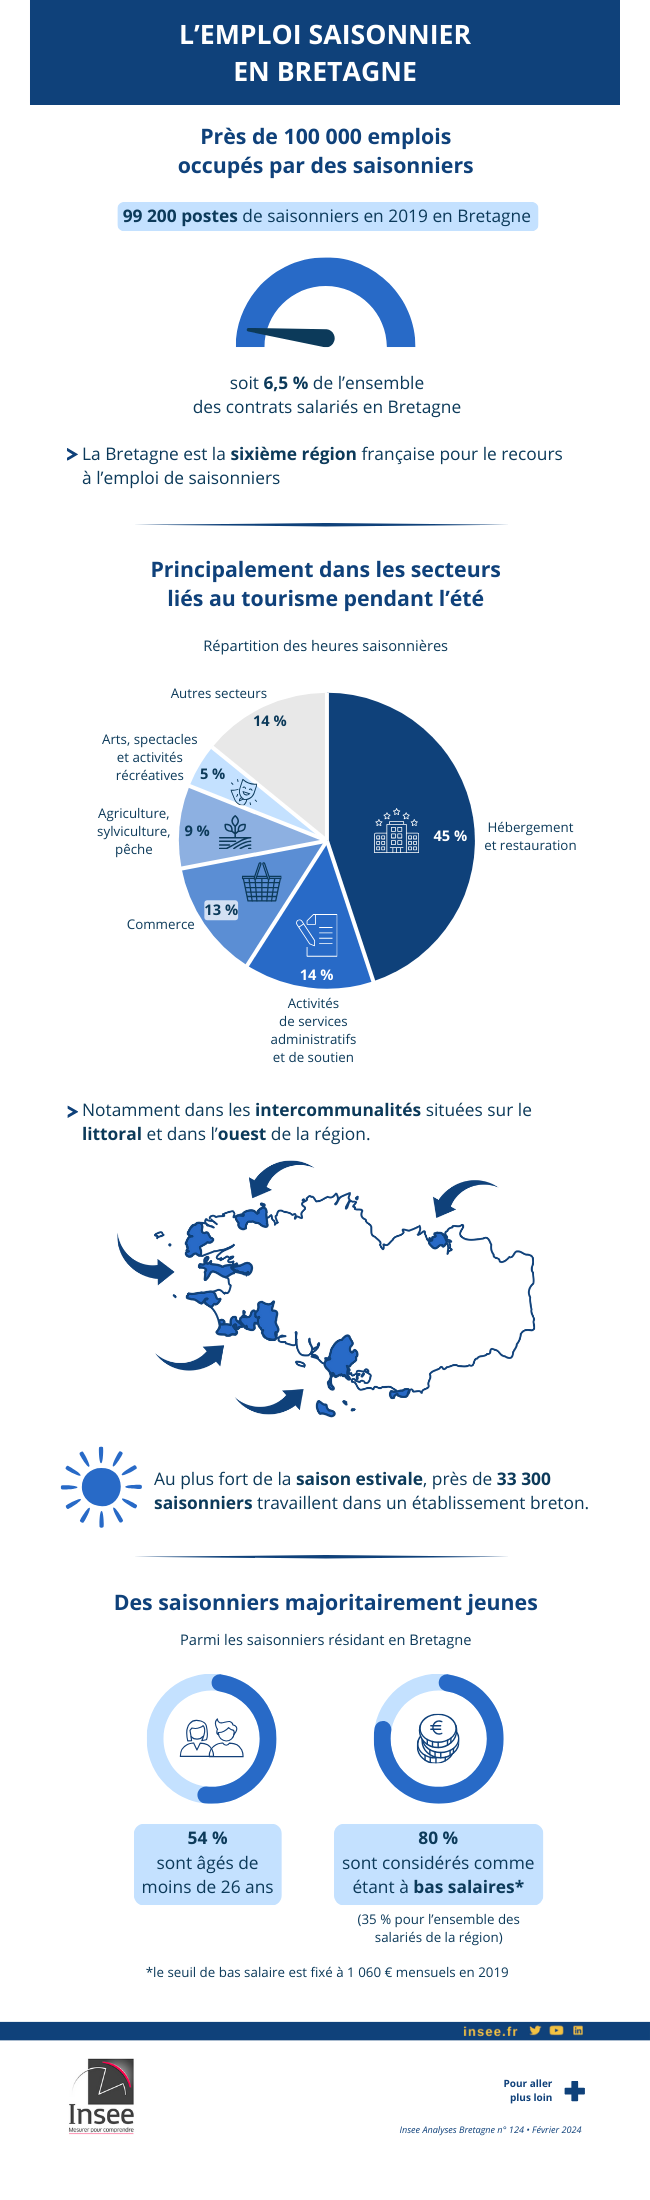 Infographie sur l’emploi saisonnier en Bretagne porté par le tourisme